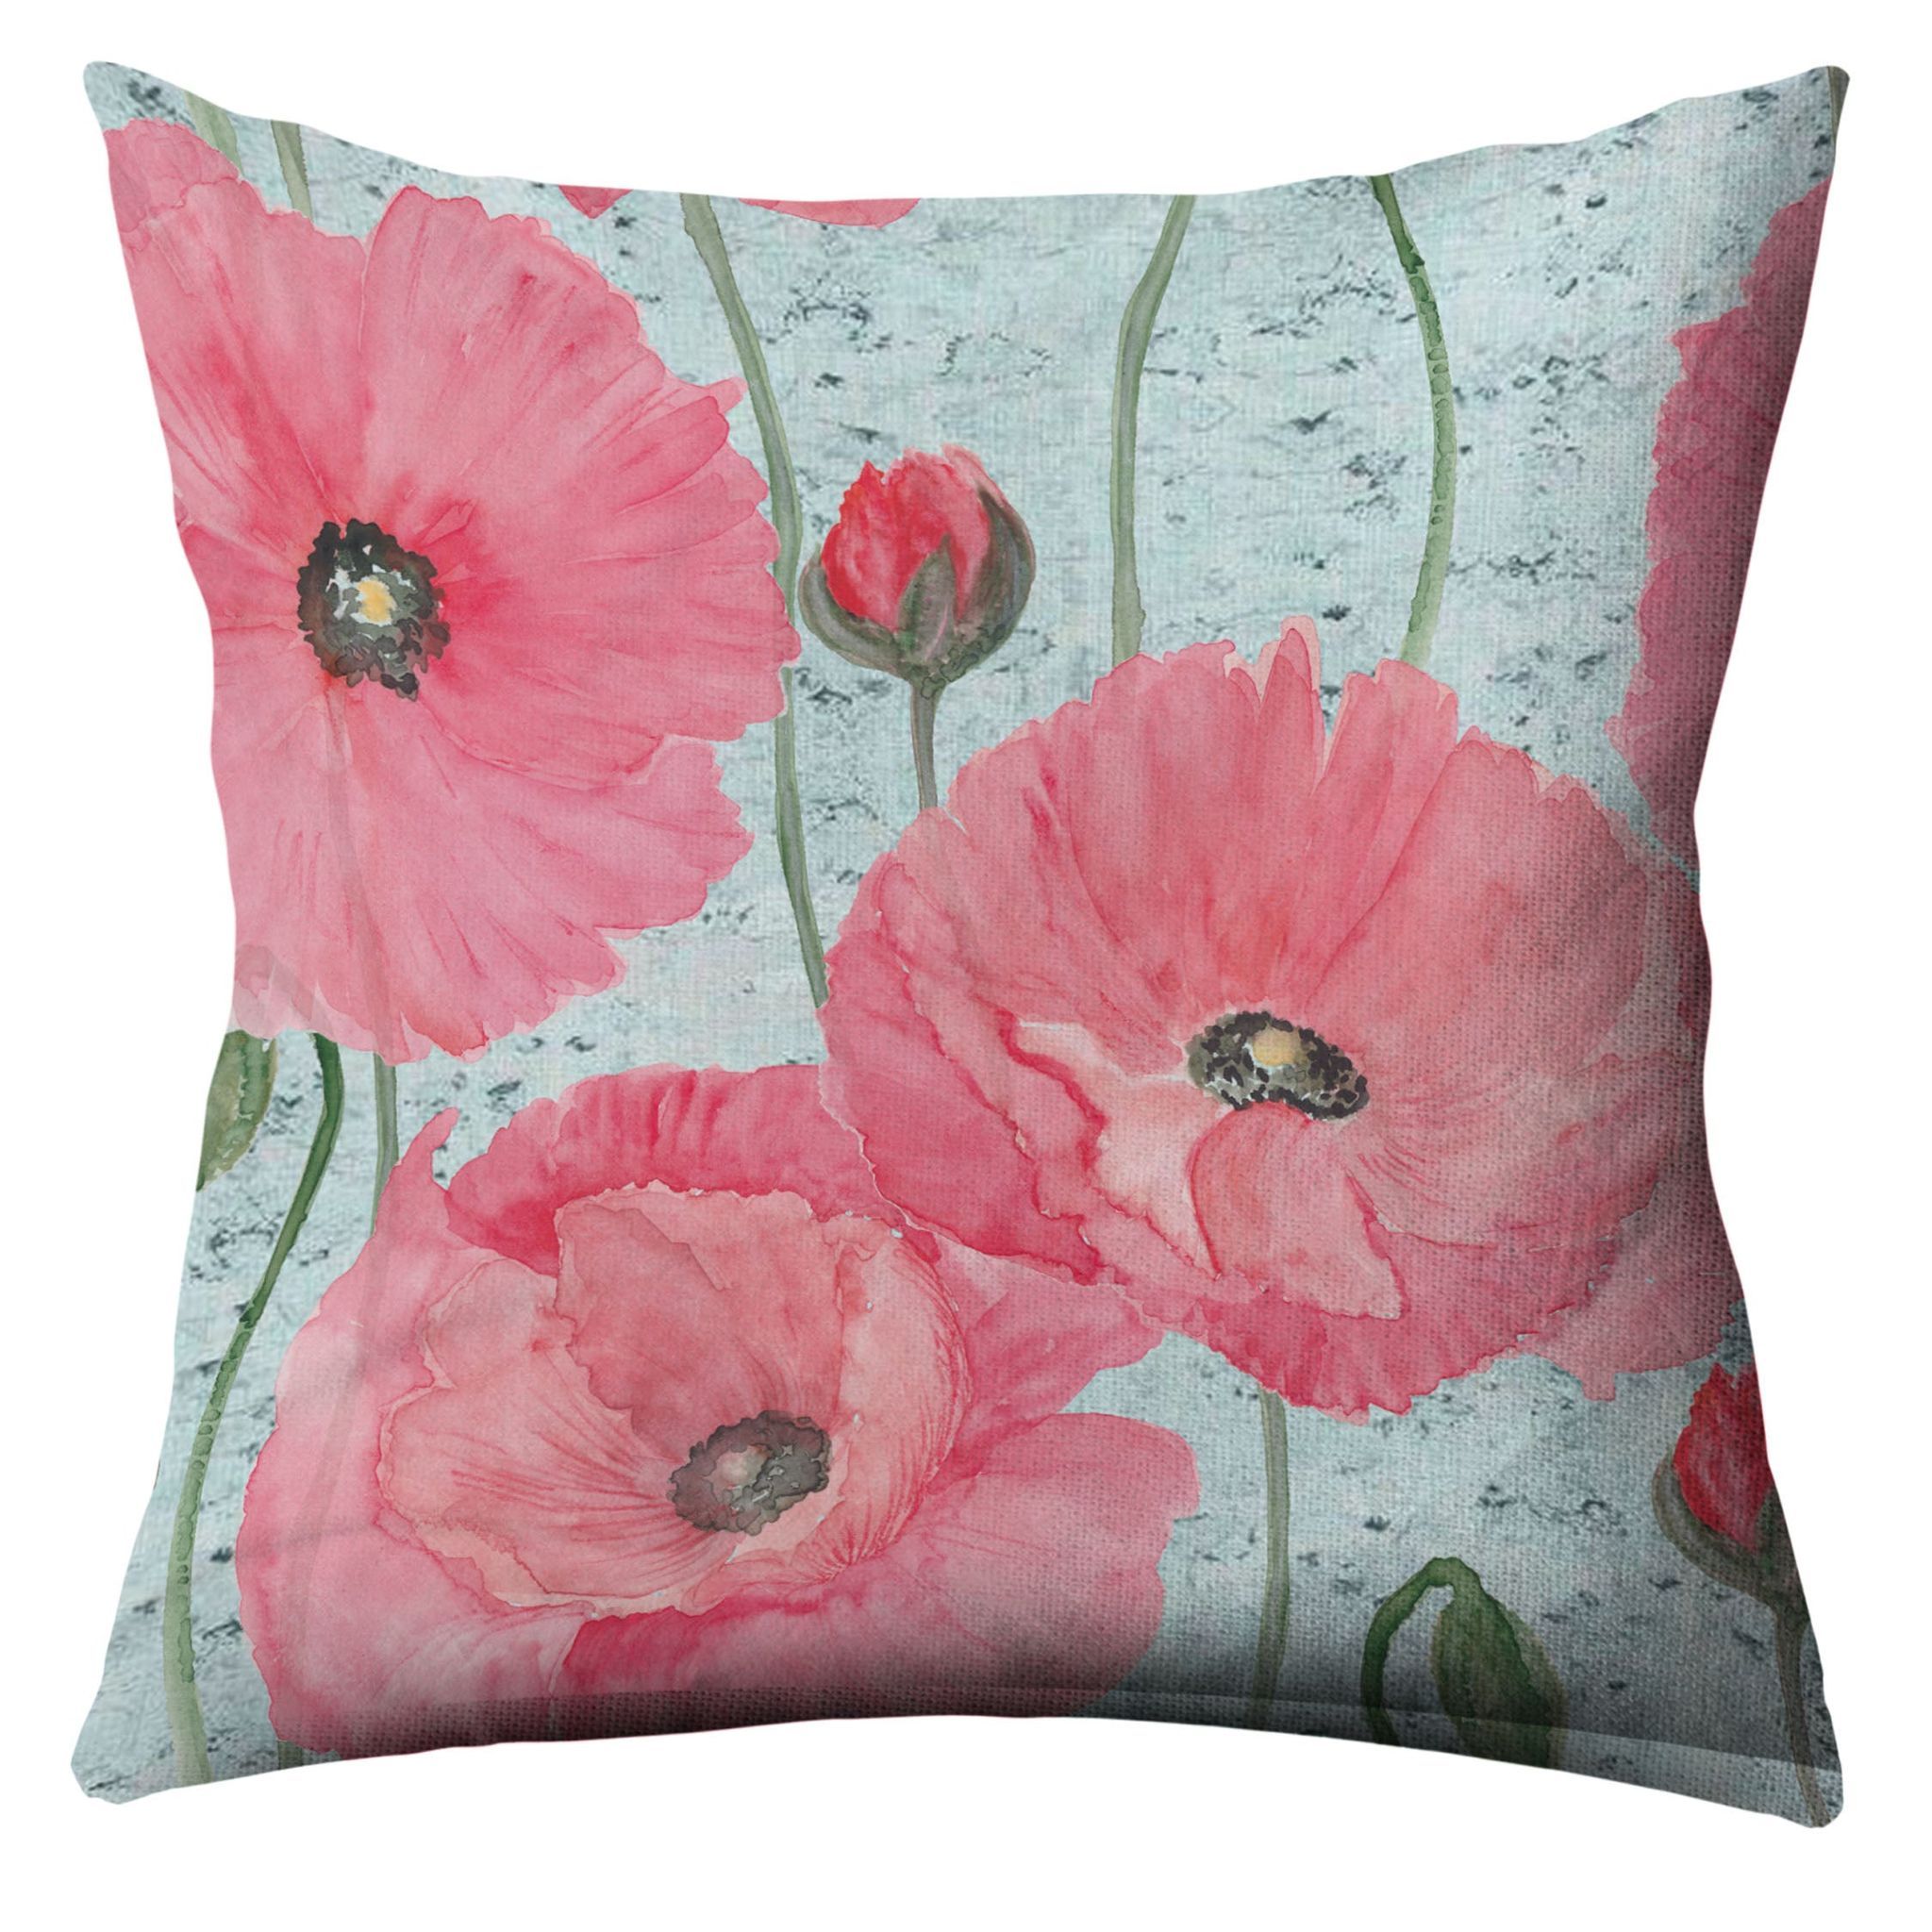 Rachel Blossom Crushed Velvet Cushion Cover (Multicolour, 16 x 16 inch)